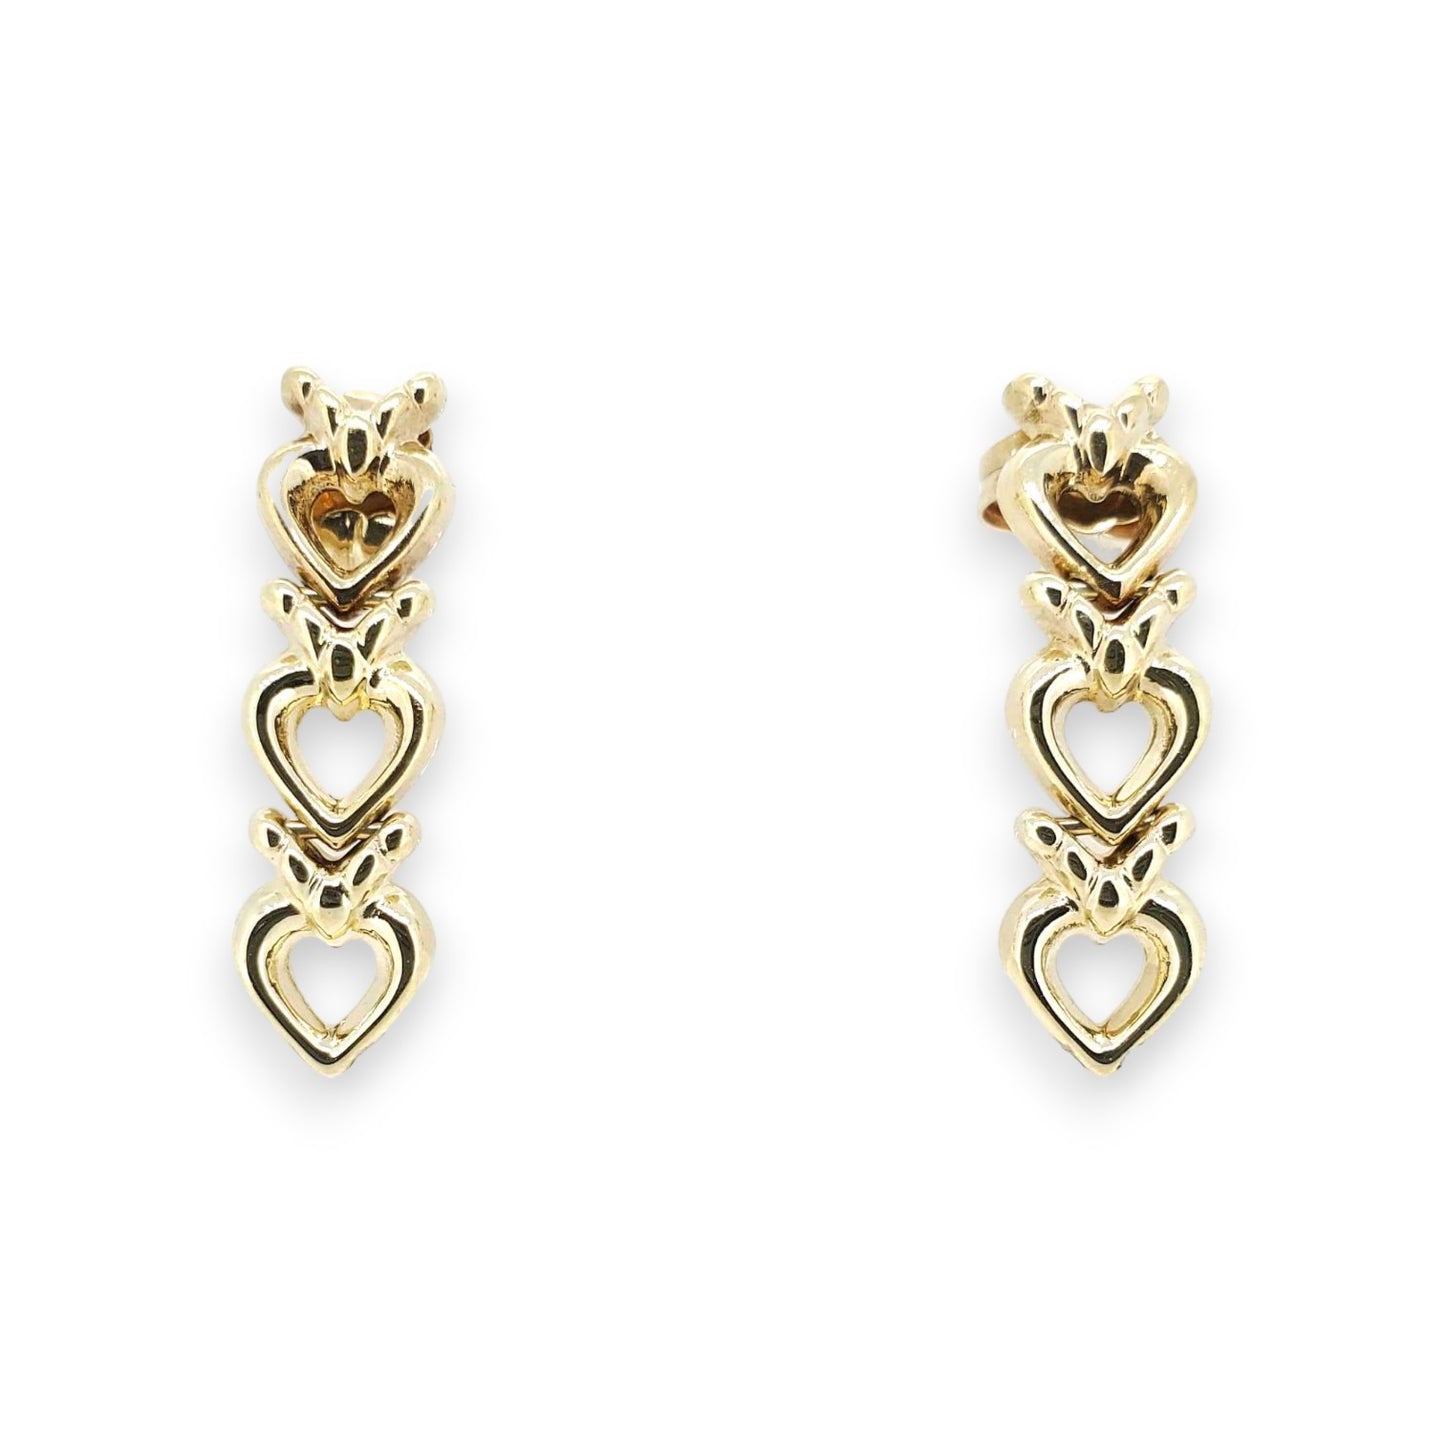 Vintage Yellow Gold 3 Heart Drop Earrings